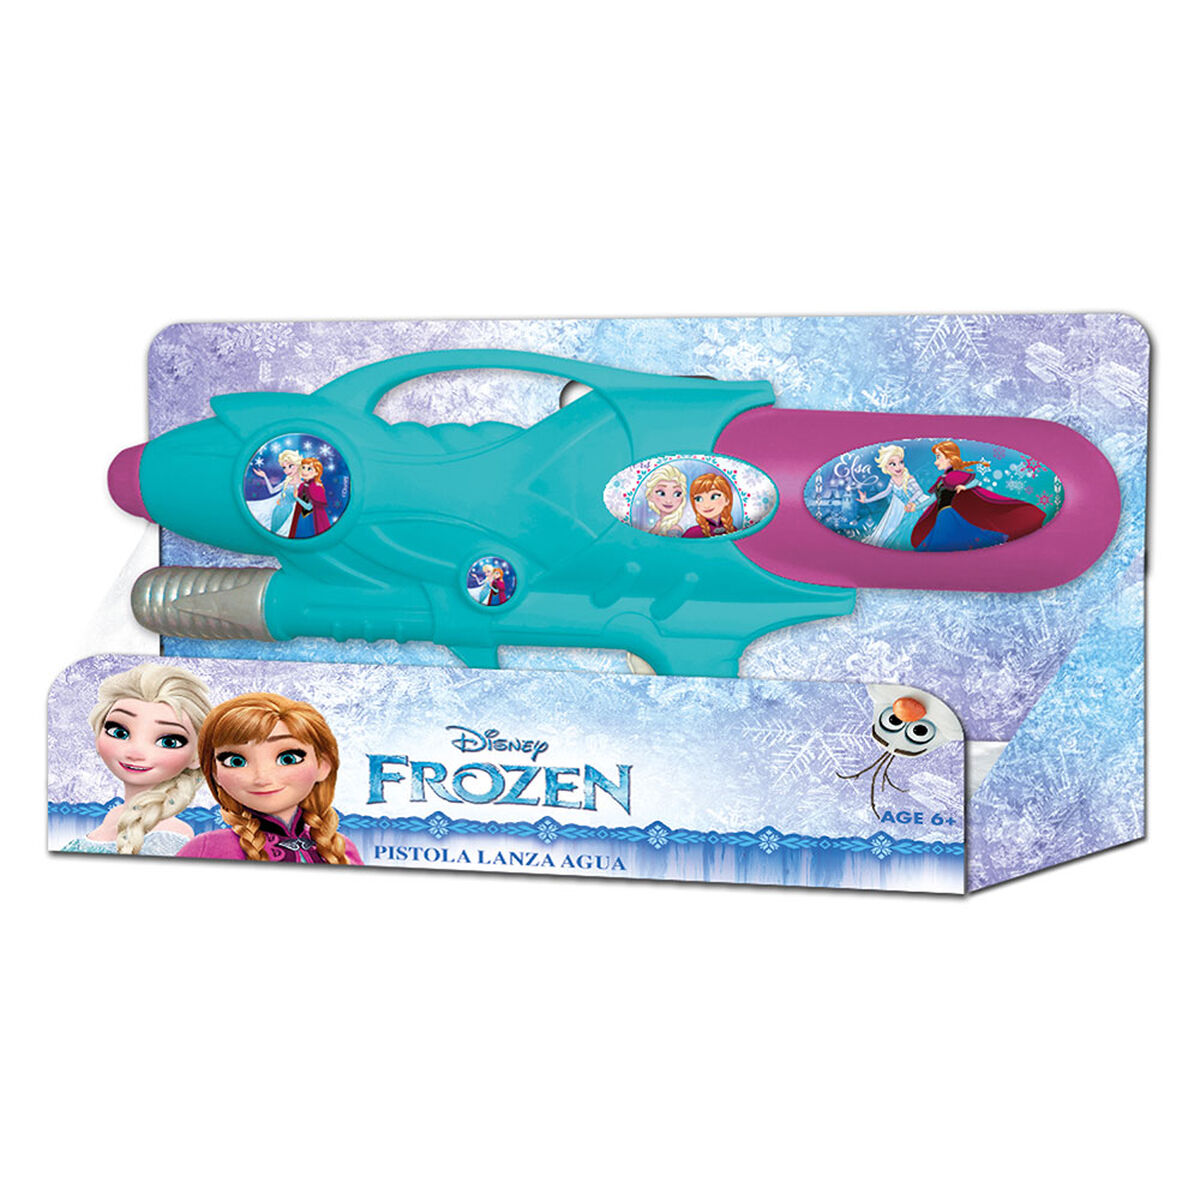 Pistola De Agua Frozen Disney